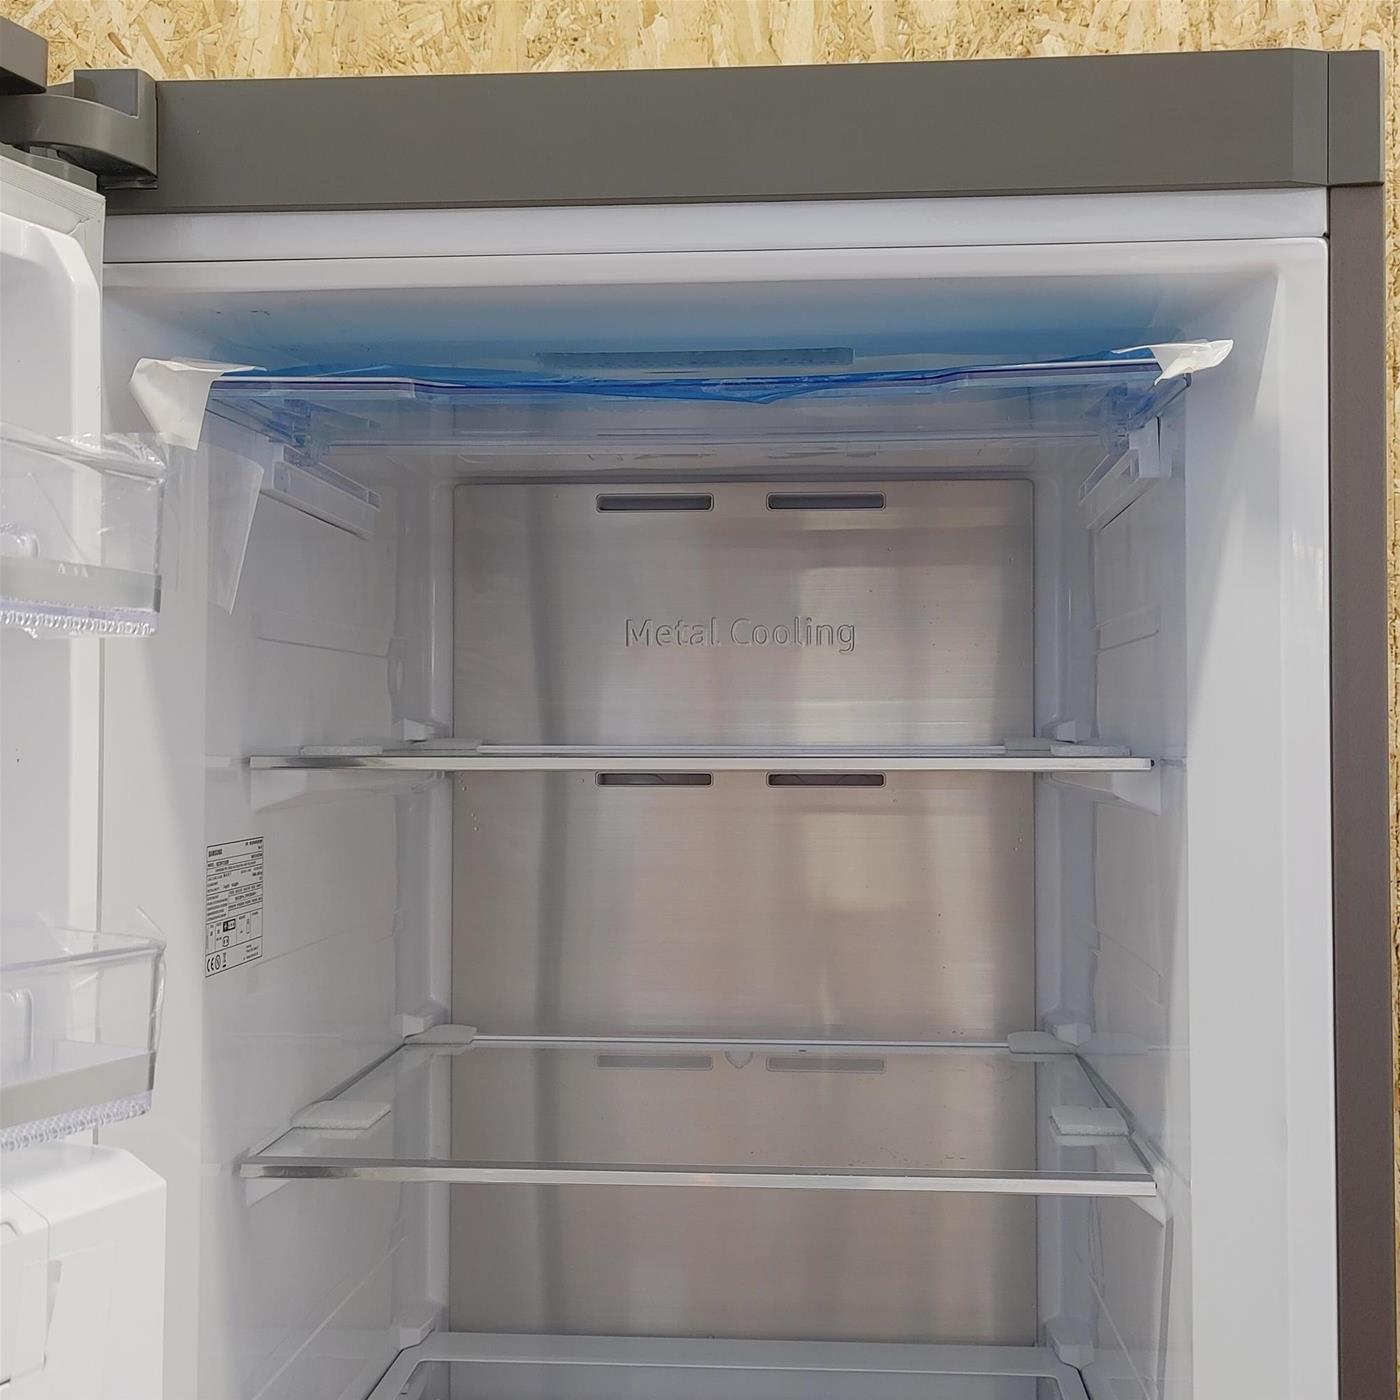 Samsung RZ32M713ES9 congelatore Congelatore verticale Libera installazione E Argento